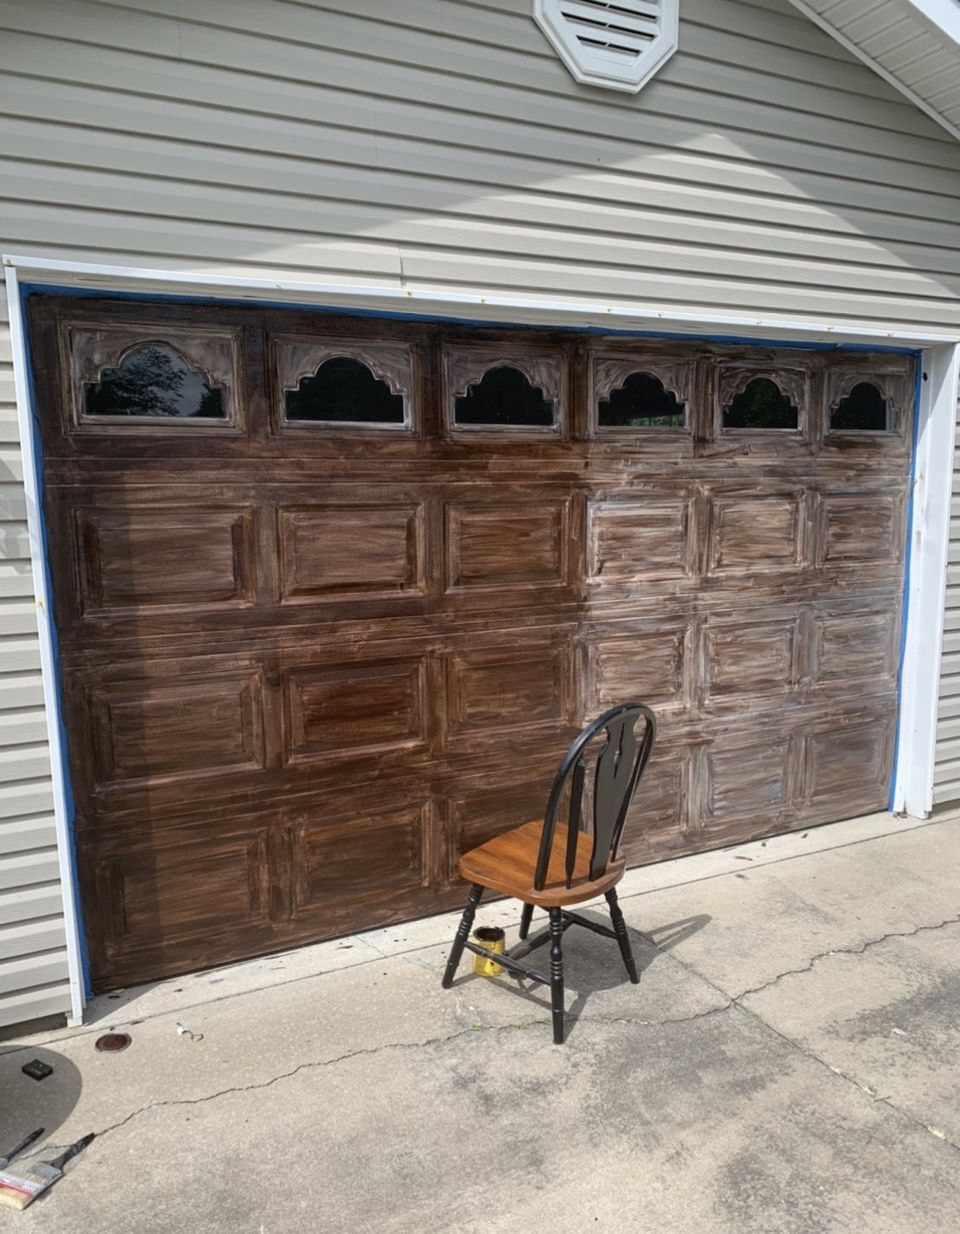 Minwax gel stained garage door in progress